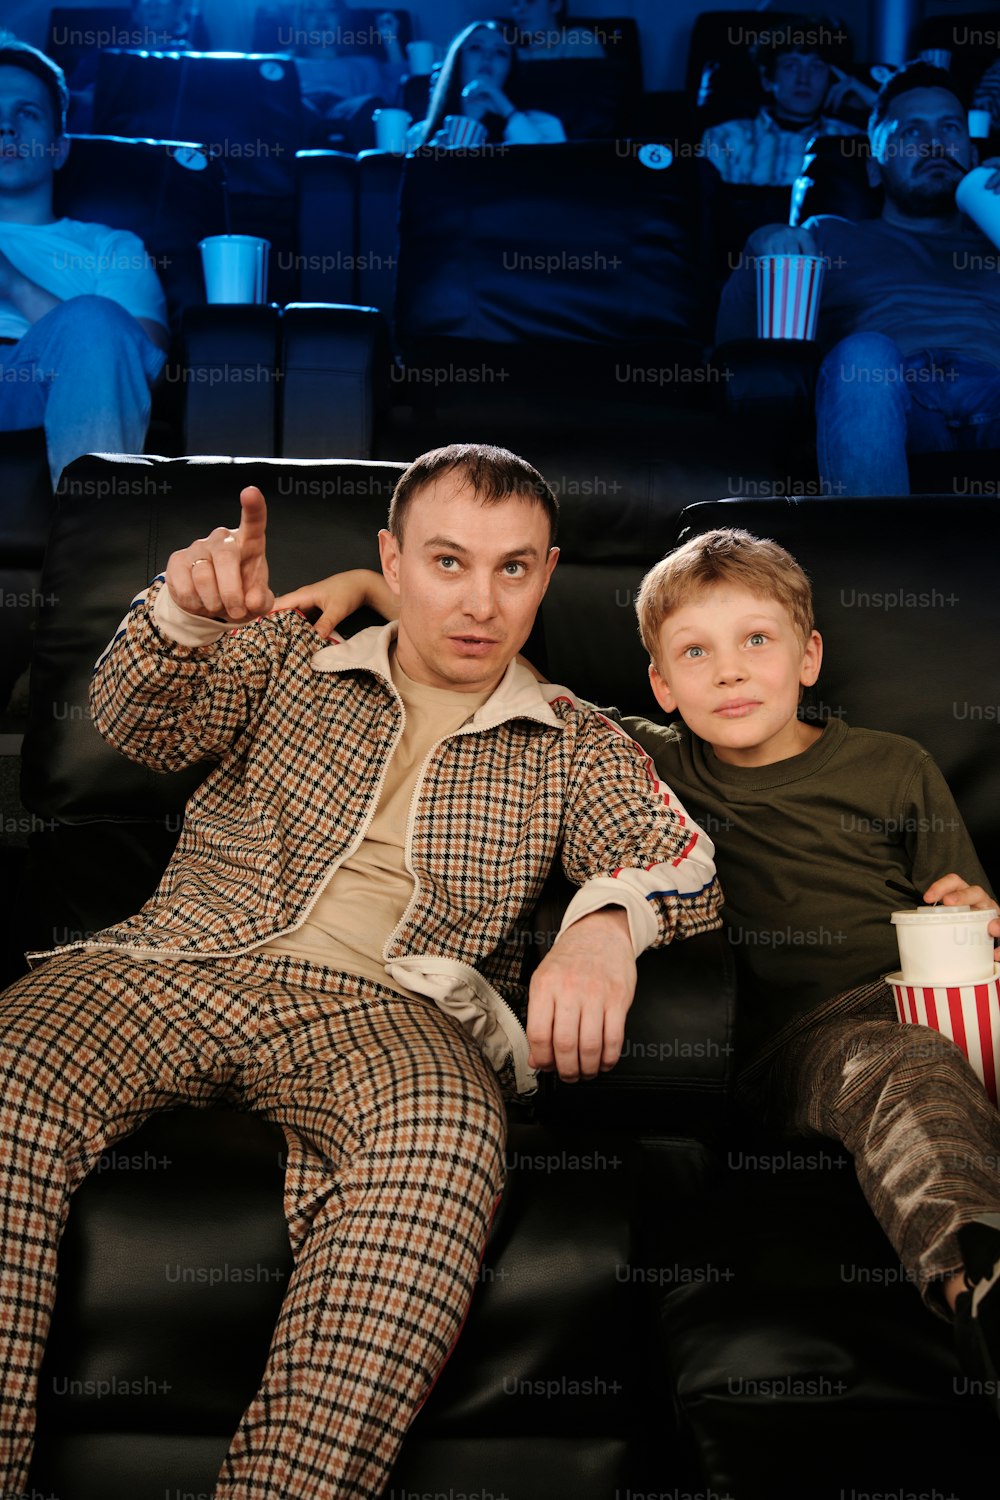 ソファに座って映画を見ている男と少年